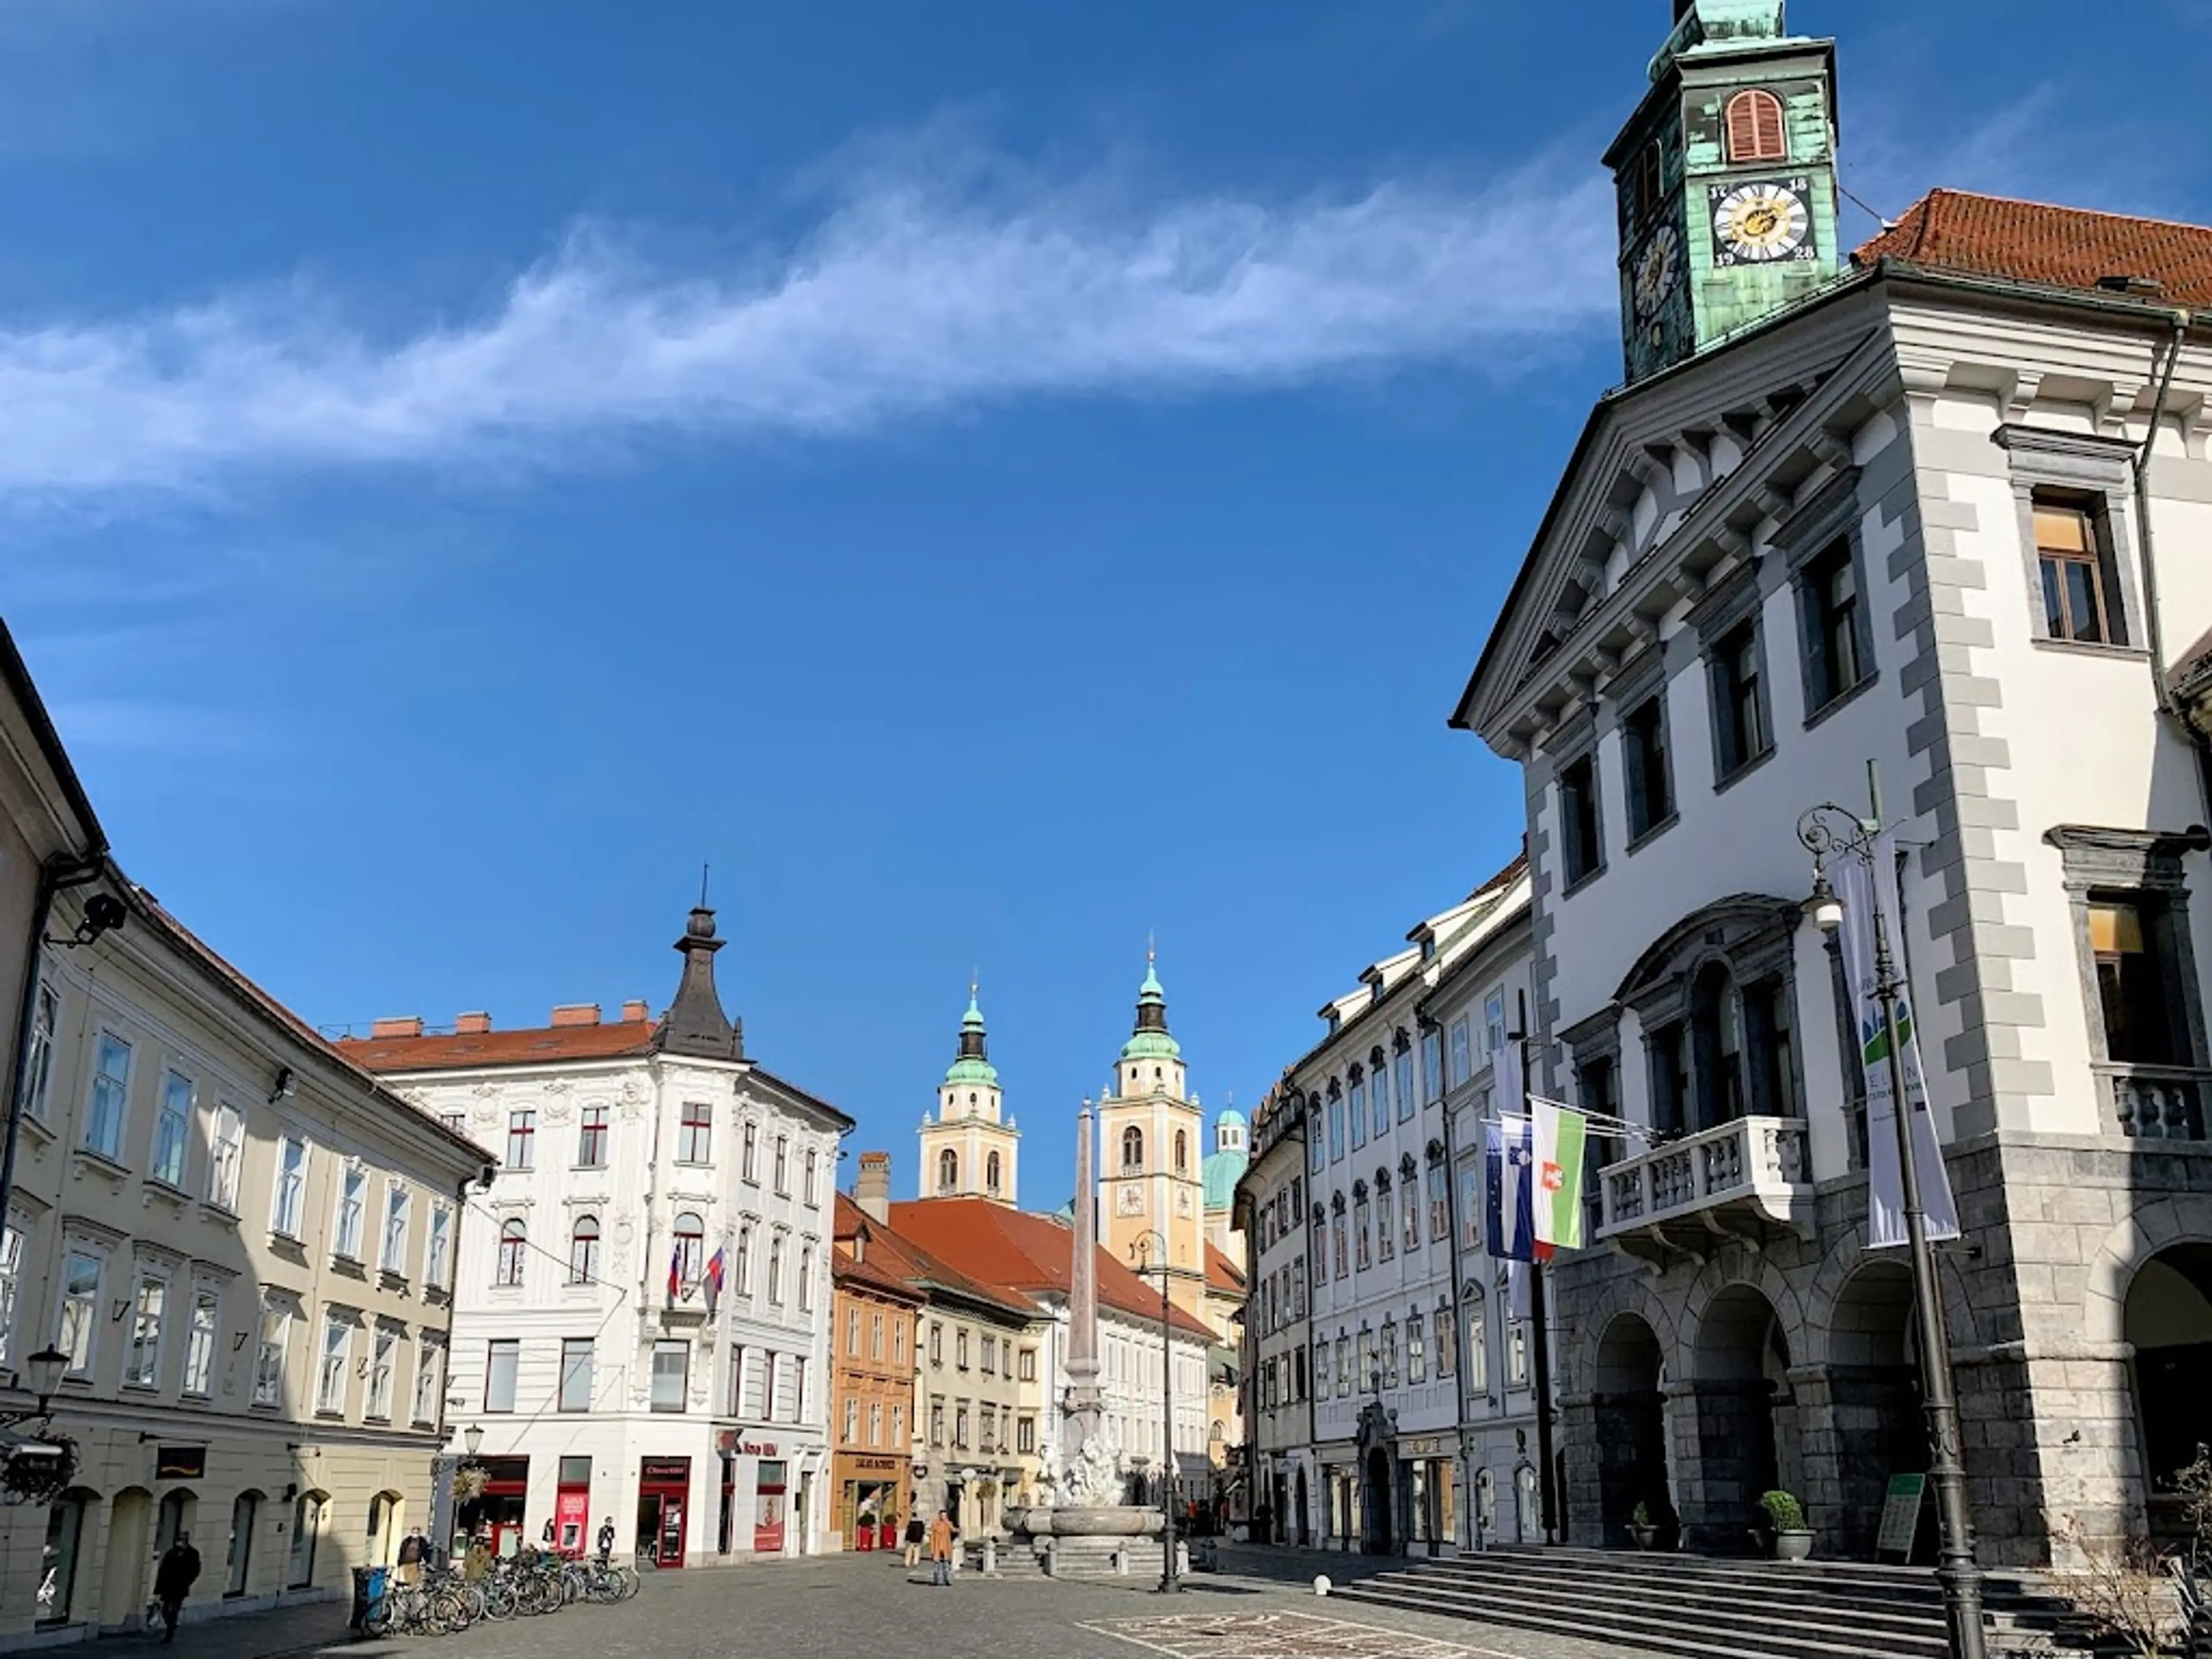 Ljubljana's Old Town